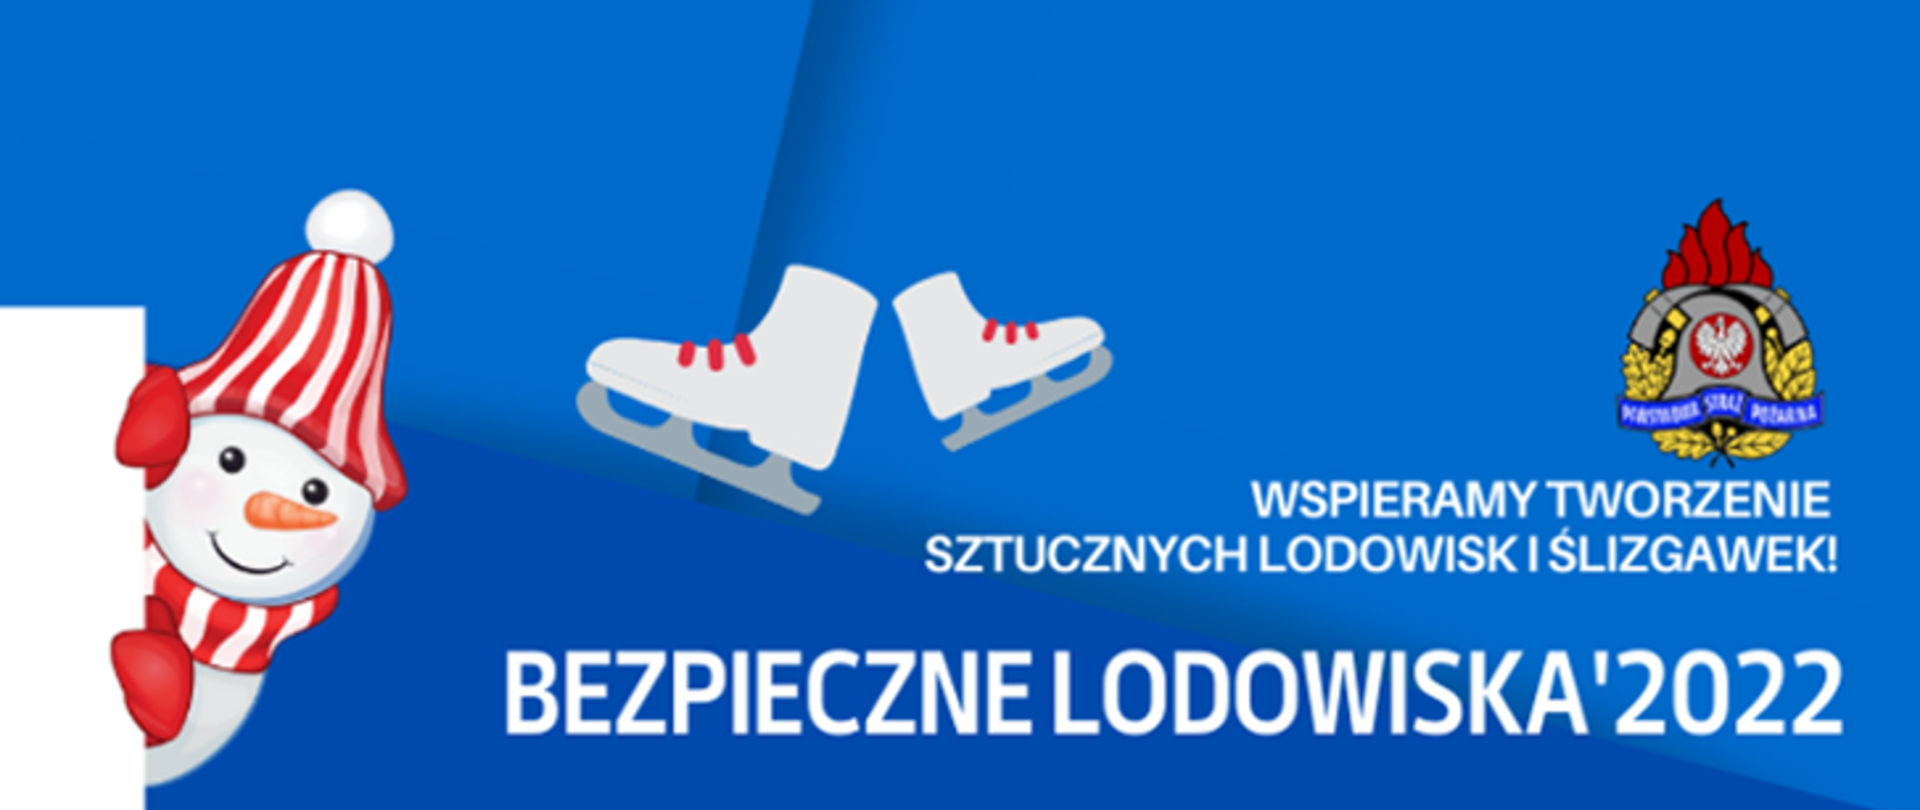 Zdjęcie przedstawia napis "Bezpieczne lodowiska 2022" wraz z logo PSP i bałwanem i łyżwami.